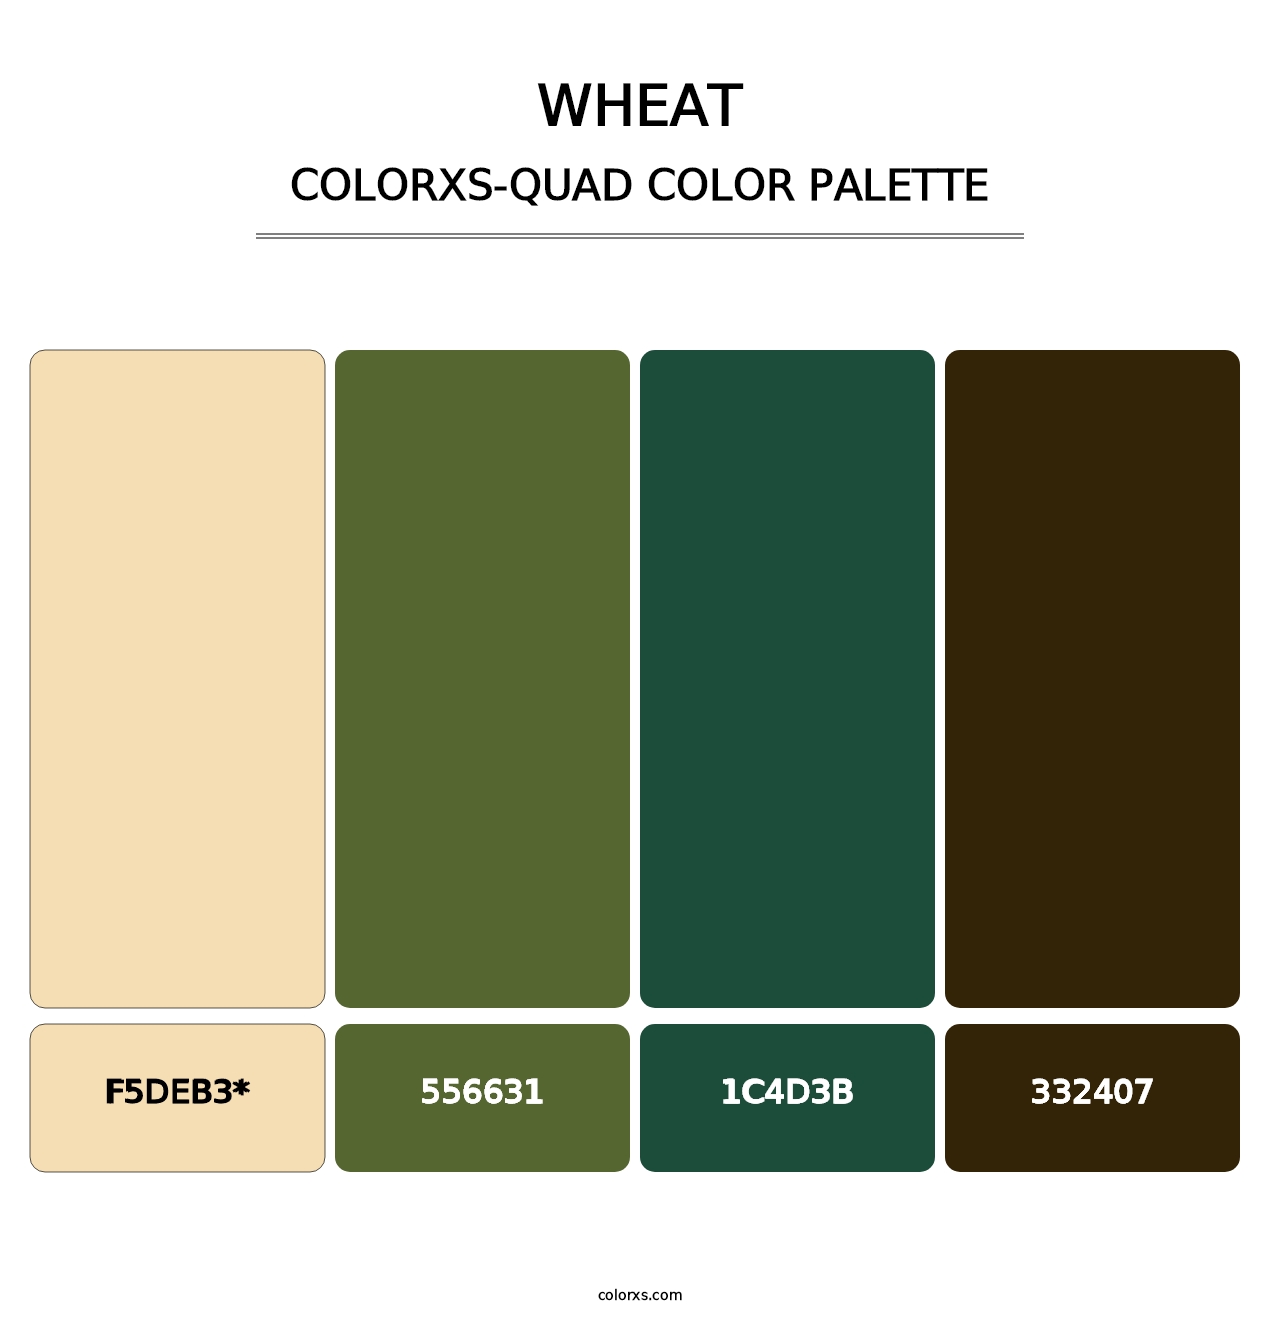 Wheat - Colorxs Quad Palette